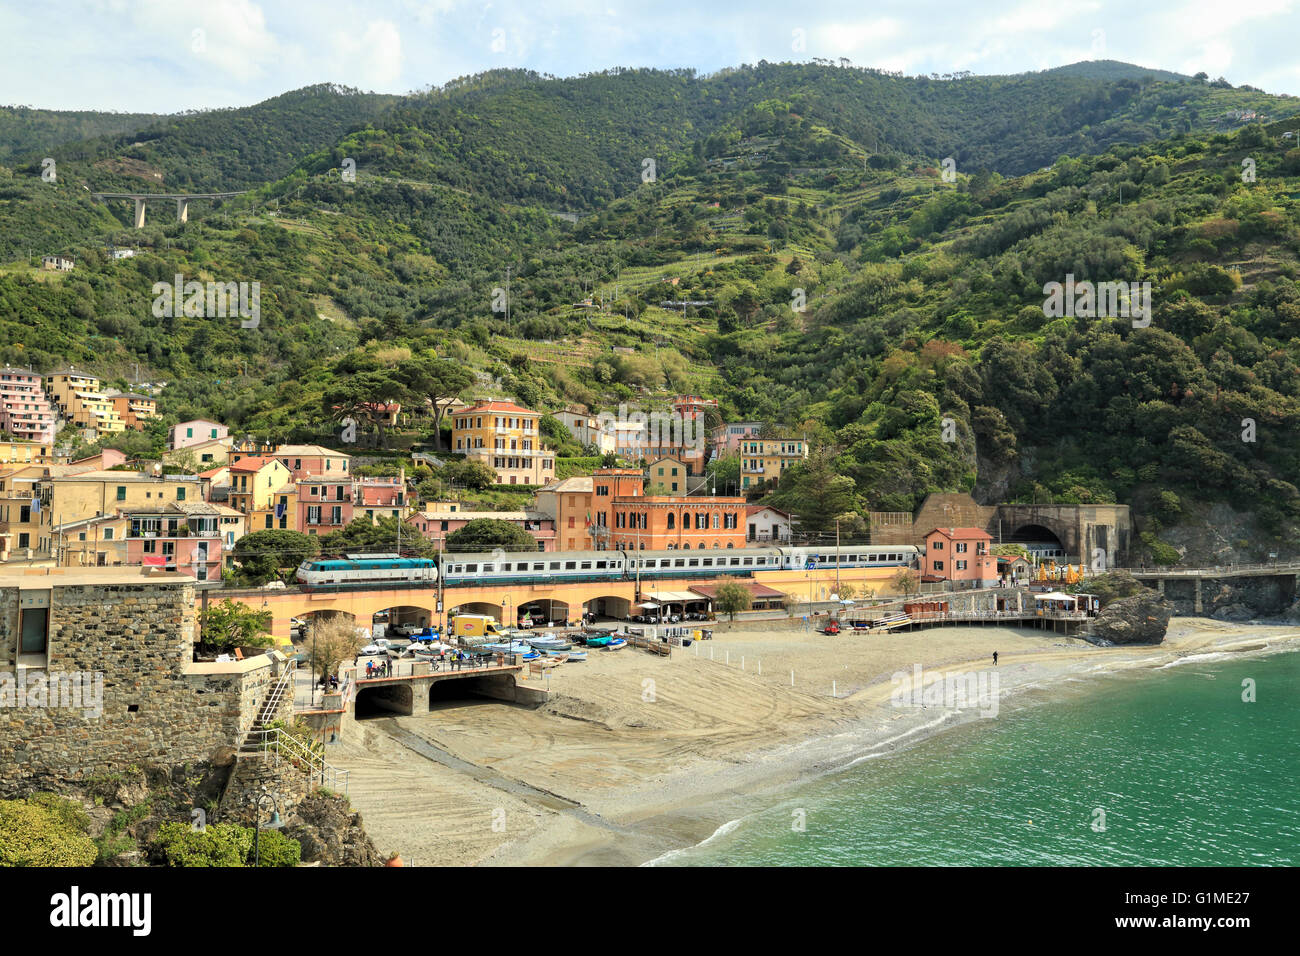 Train coming out of the tunnel, Monterosso al Mare, Cinque Terre, Liguria, Italy Stock Photo